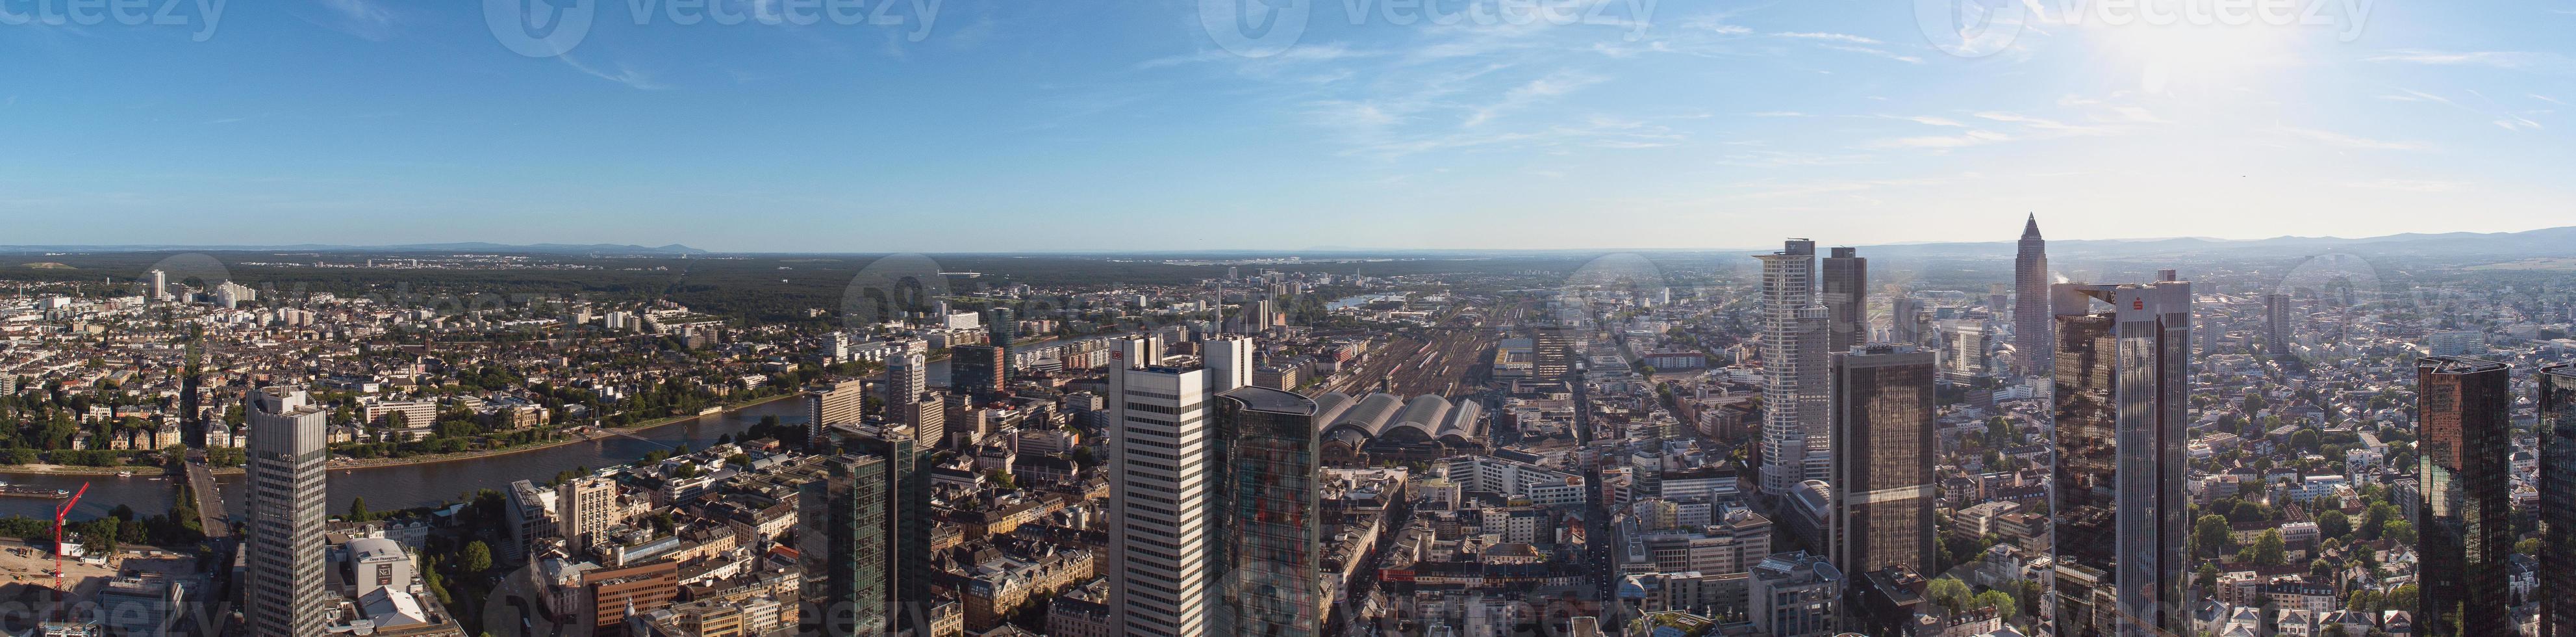 Frankfurt am main skyline, Alemania, Europa, el centro financiero del país. foto